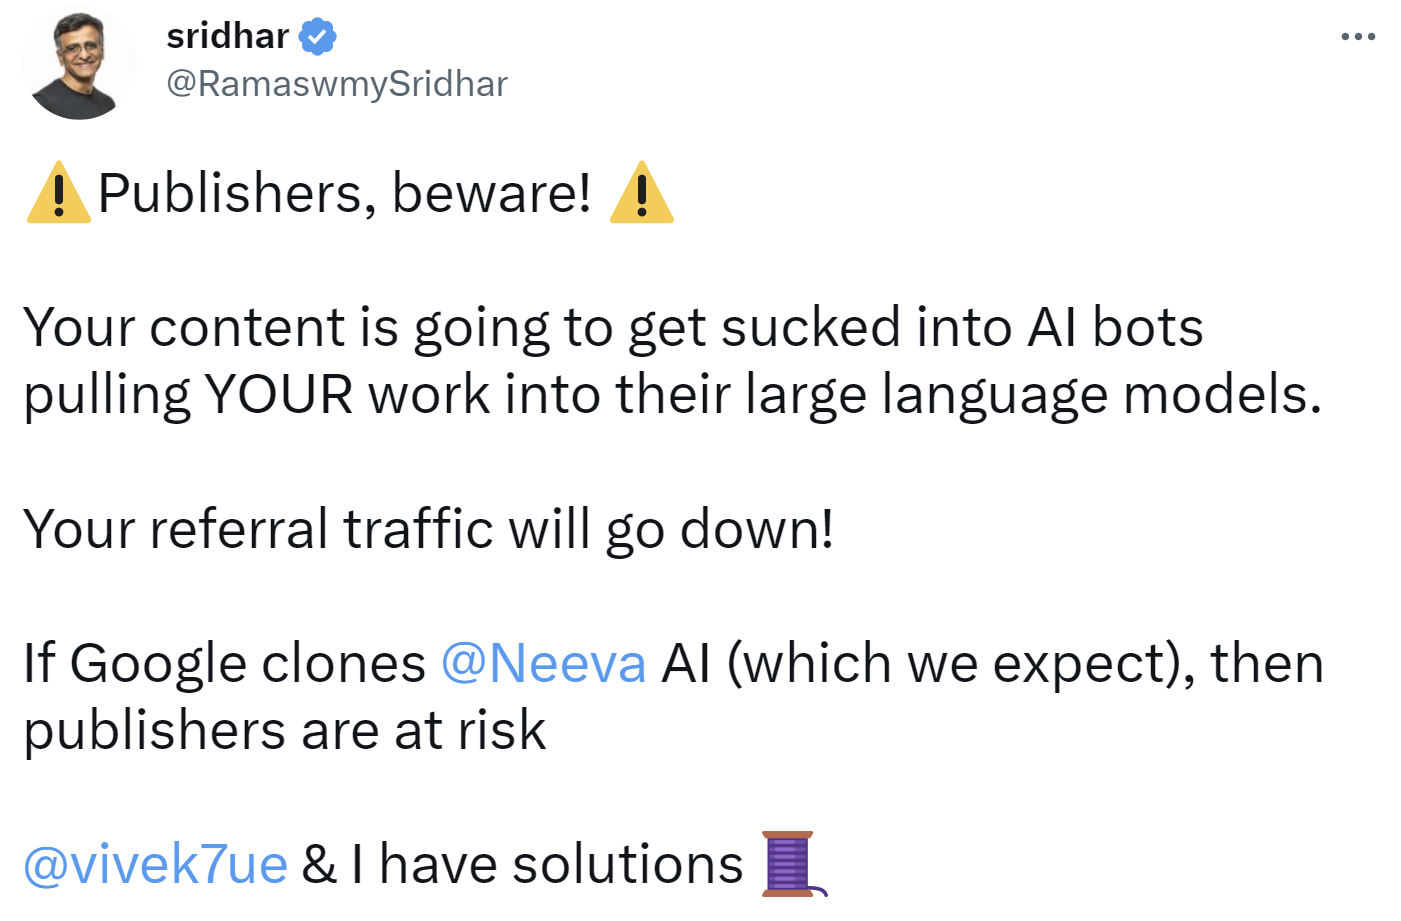 Sridhar Ramaswamy warnt vor Traffic-Verlusten für Websites durch KI-Chatbots